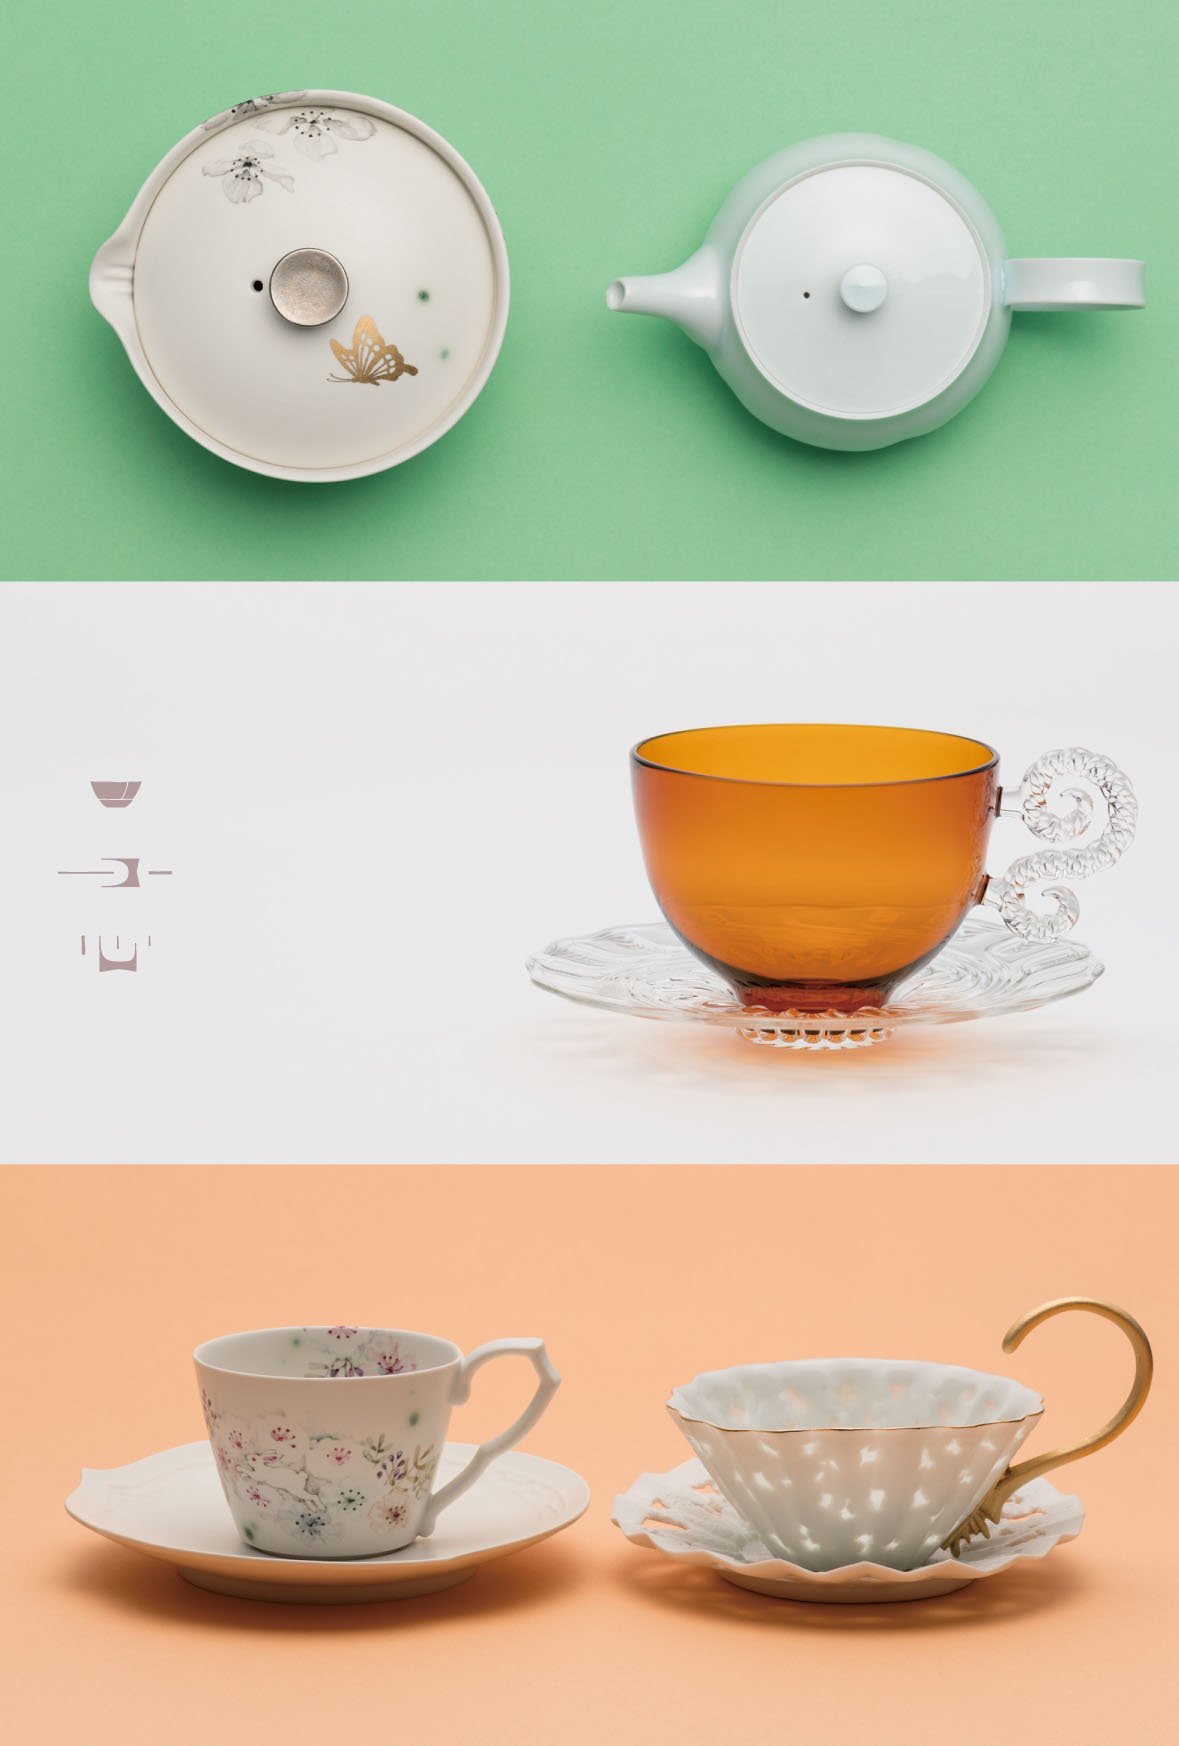 お茶をたのしむうつわ展‐煎茶・和紅茶‐